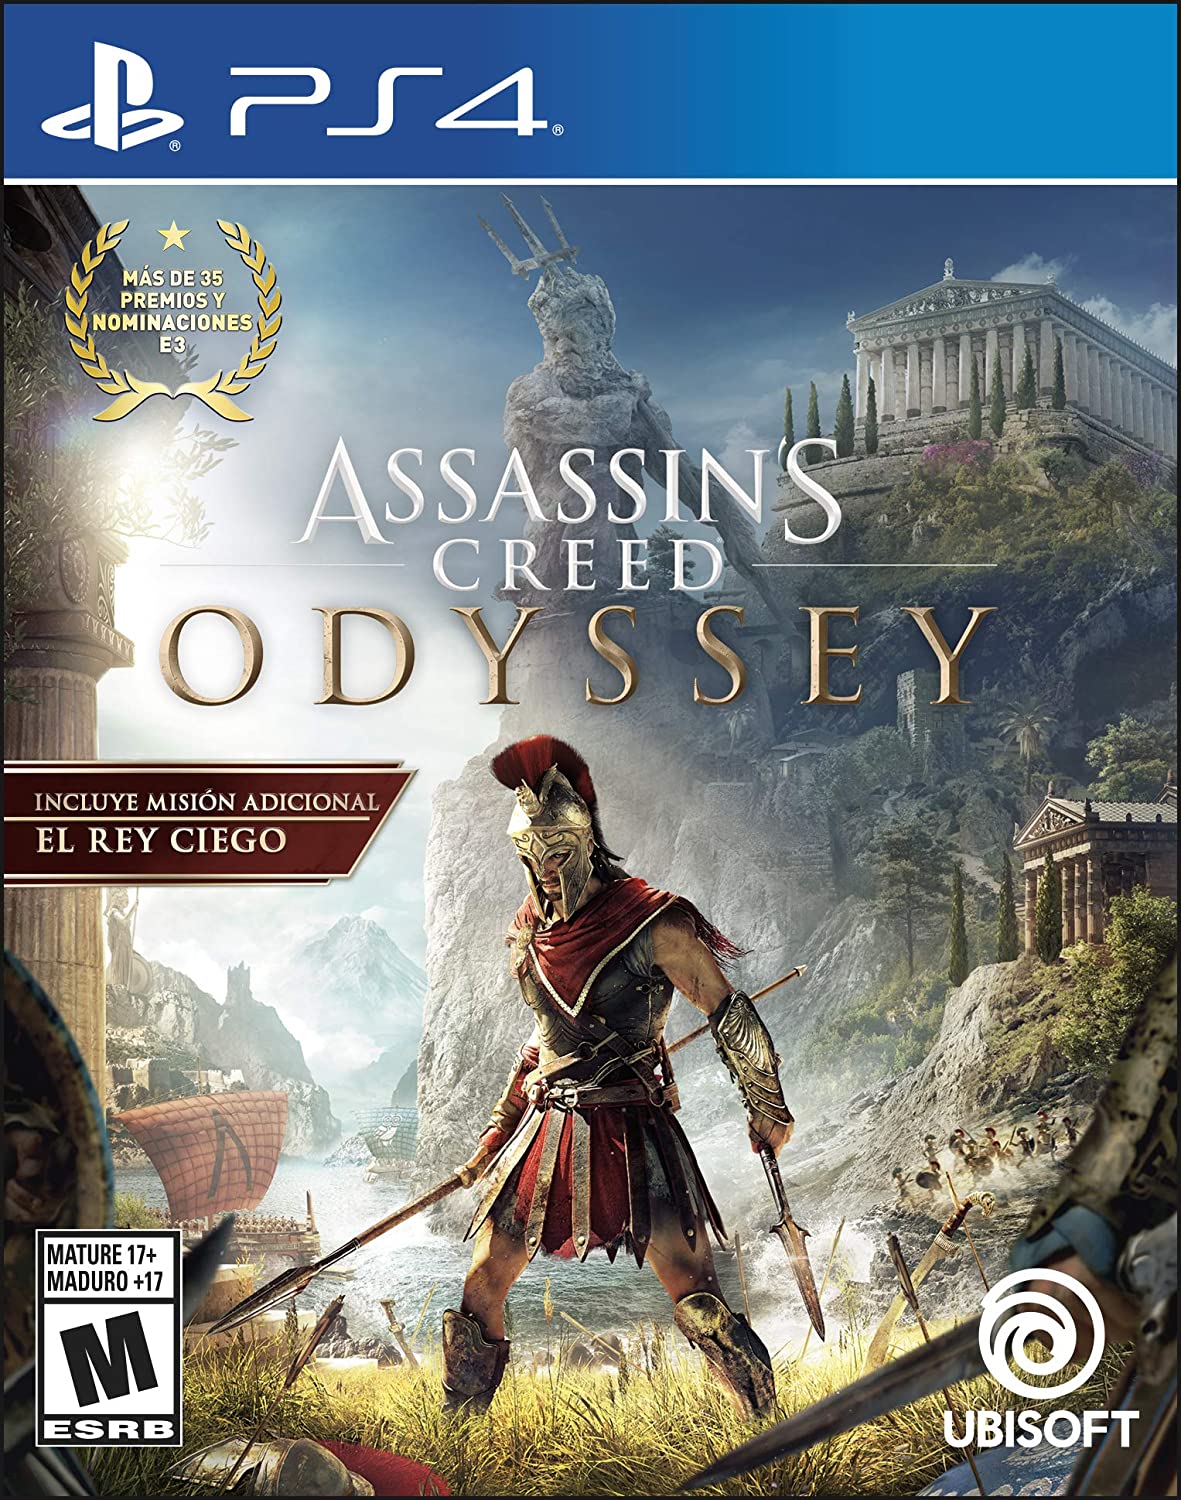 Assassin's Creed Odissey con descuento de Black Friday en Amazon